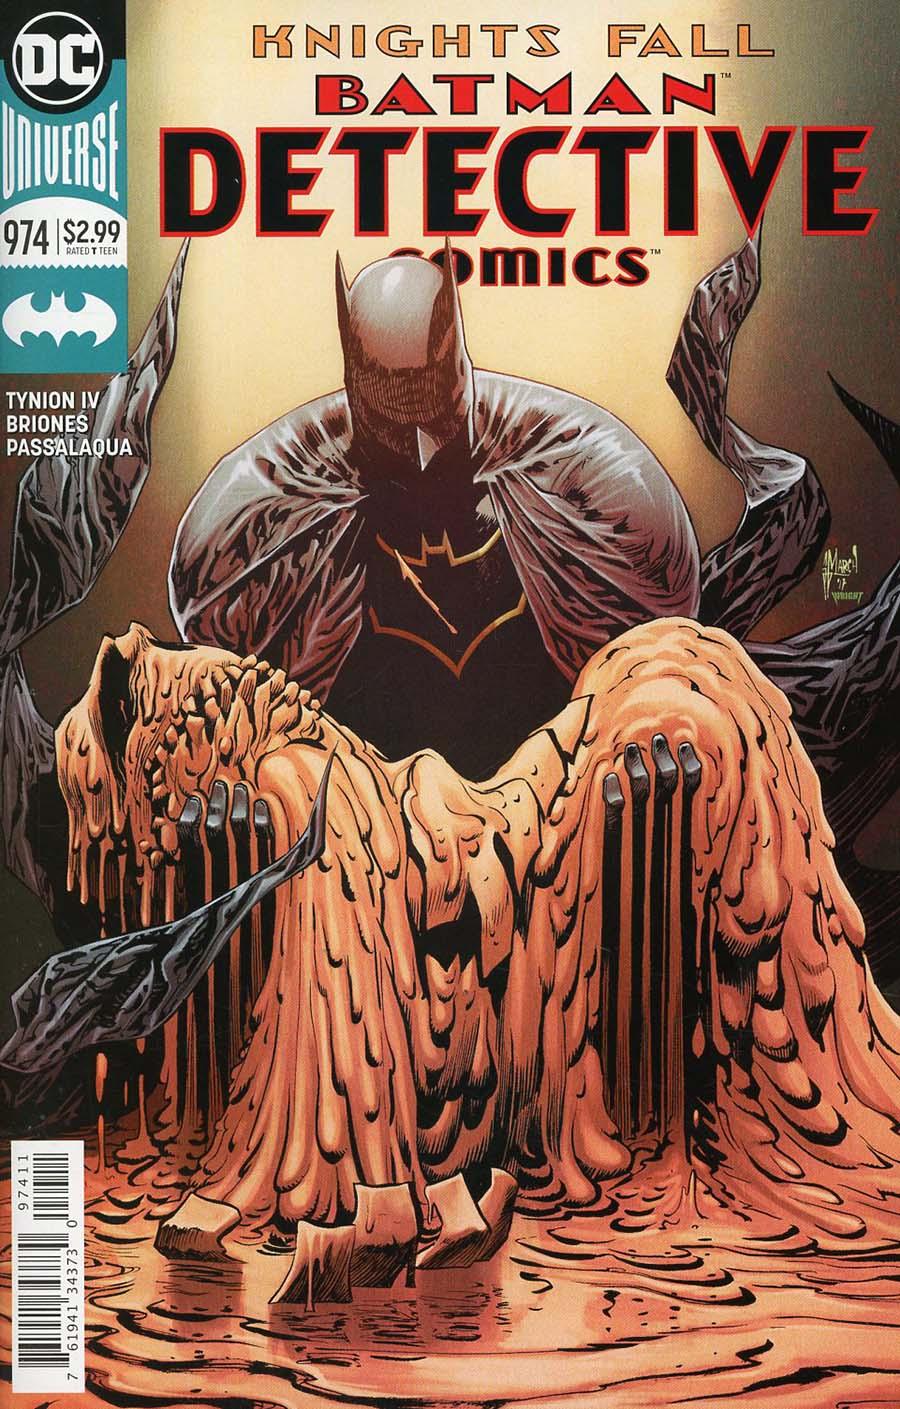 Detective Comics Vol. 2 #974